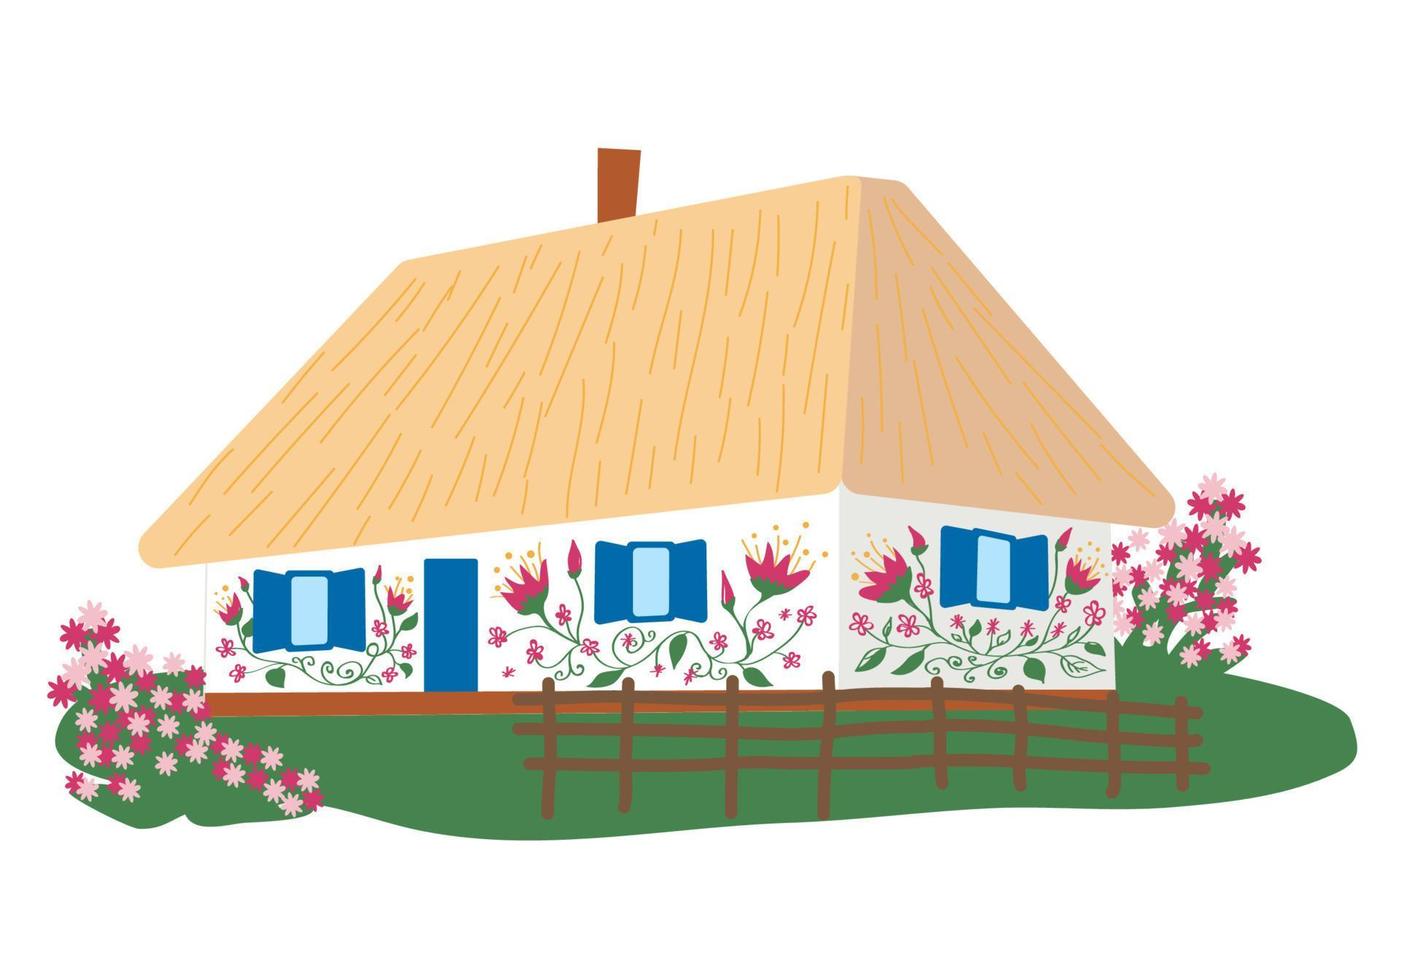 ukrainska lantlig hus med trä- staket. ukrainska traditionell hus med vit väggar, halmtak tak, blomma trädgård och korg- staket. vektor